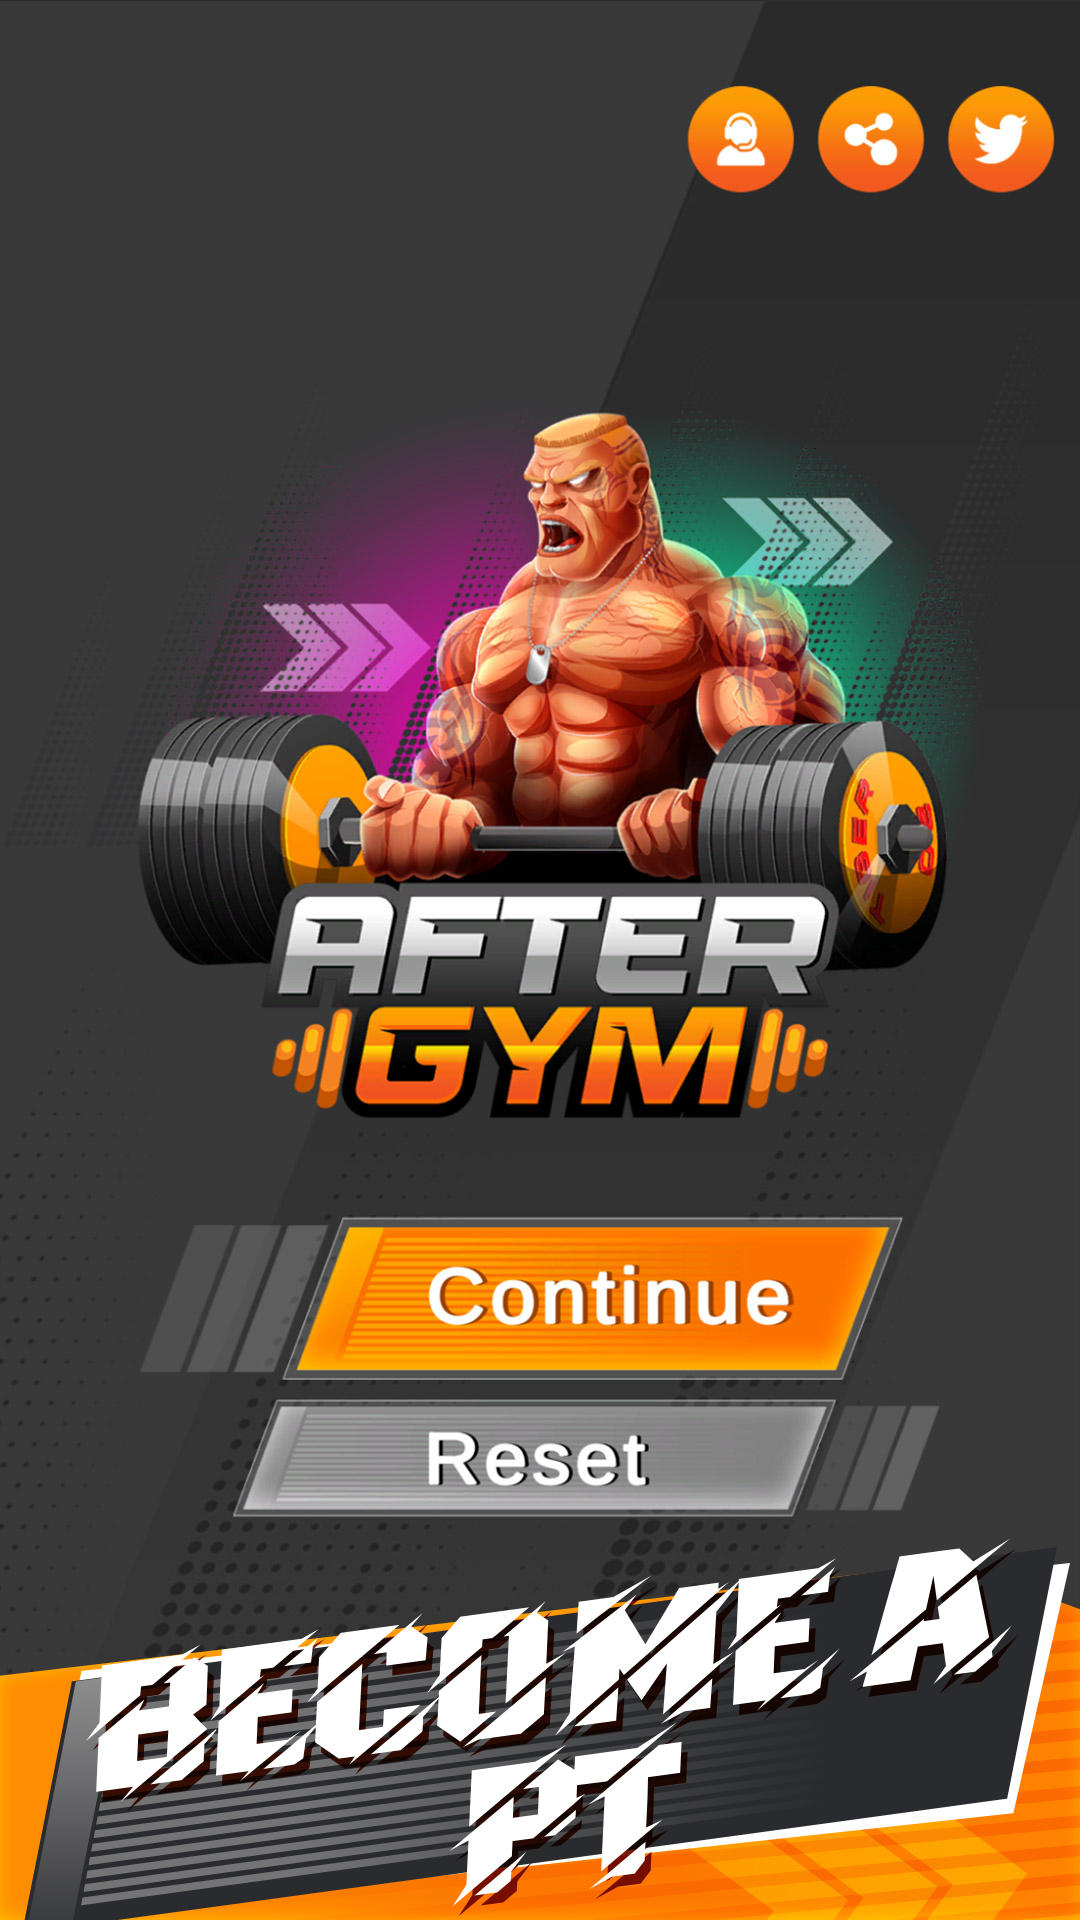 Screenshot 1 of Setelah Gym (Demo) 1.0.9